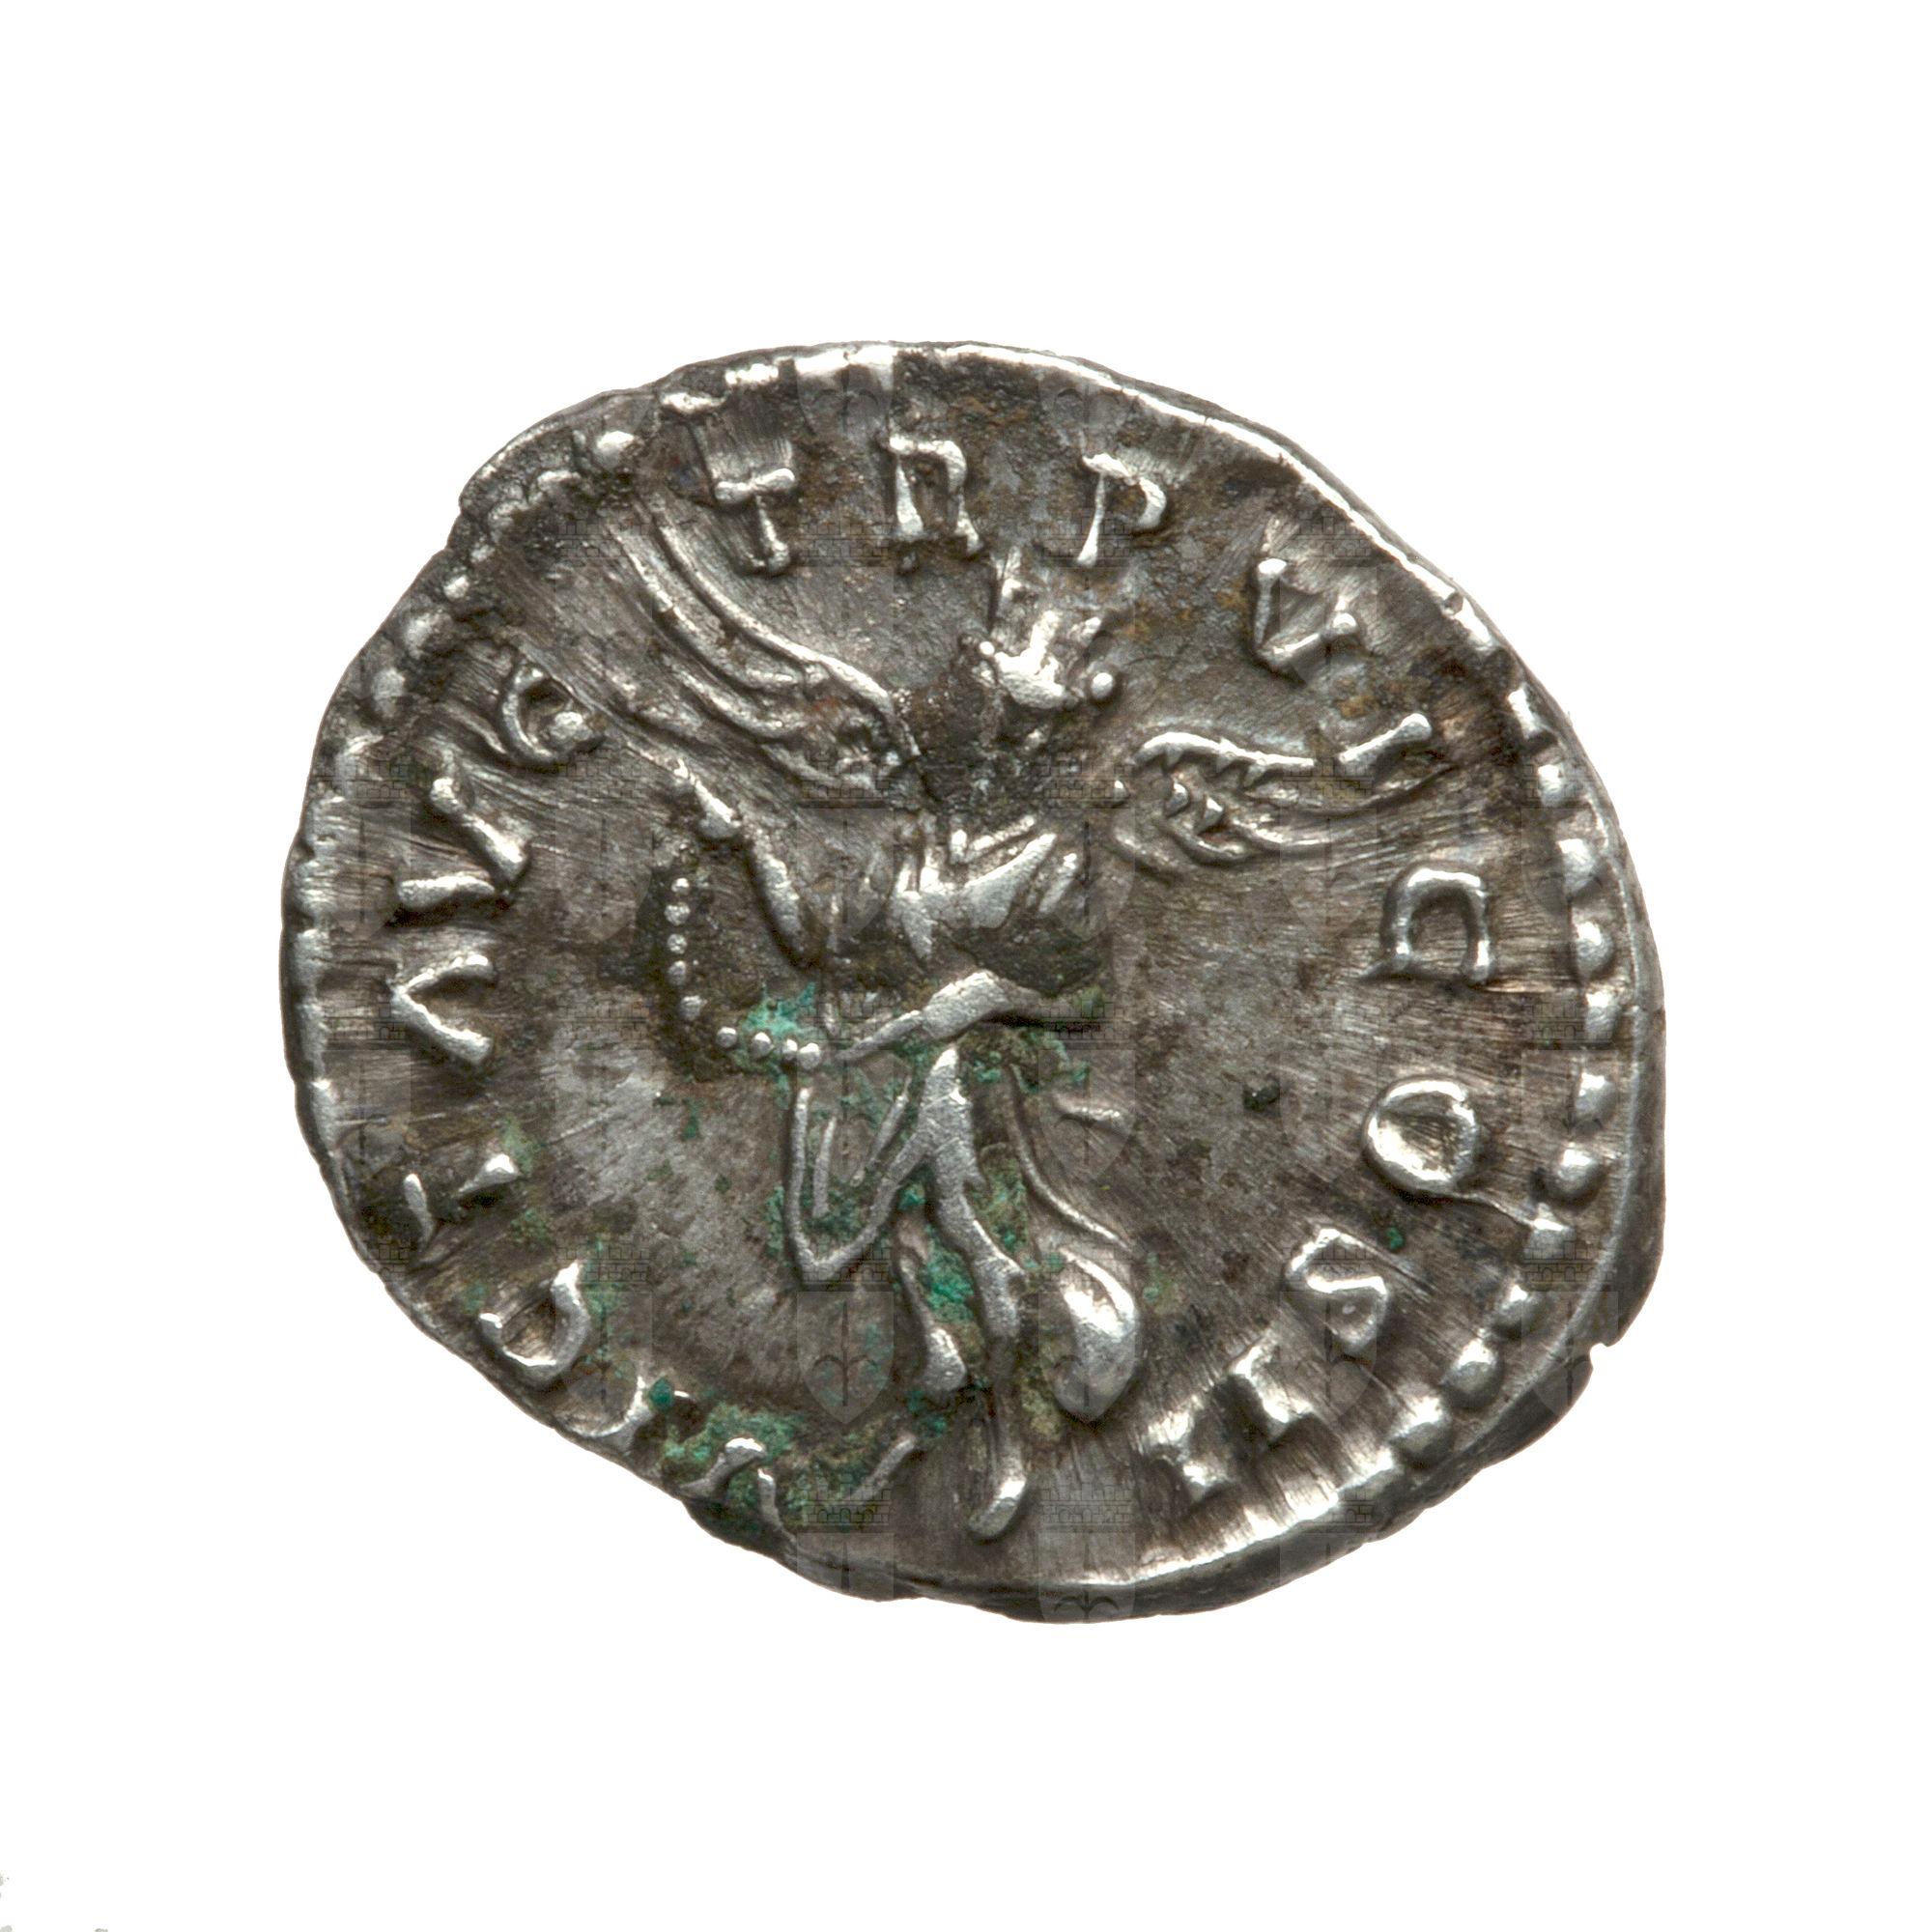 https://catalogomusei.comune.trieste.it/samira/resource/image/reperti-archeologici/Roma 1043 R Lucio Vero.jpg?token=65e6bf47d0574